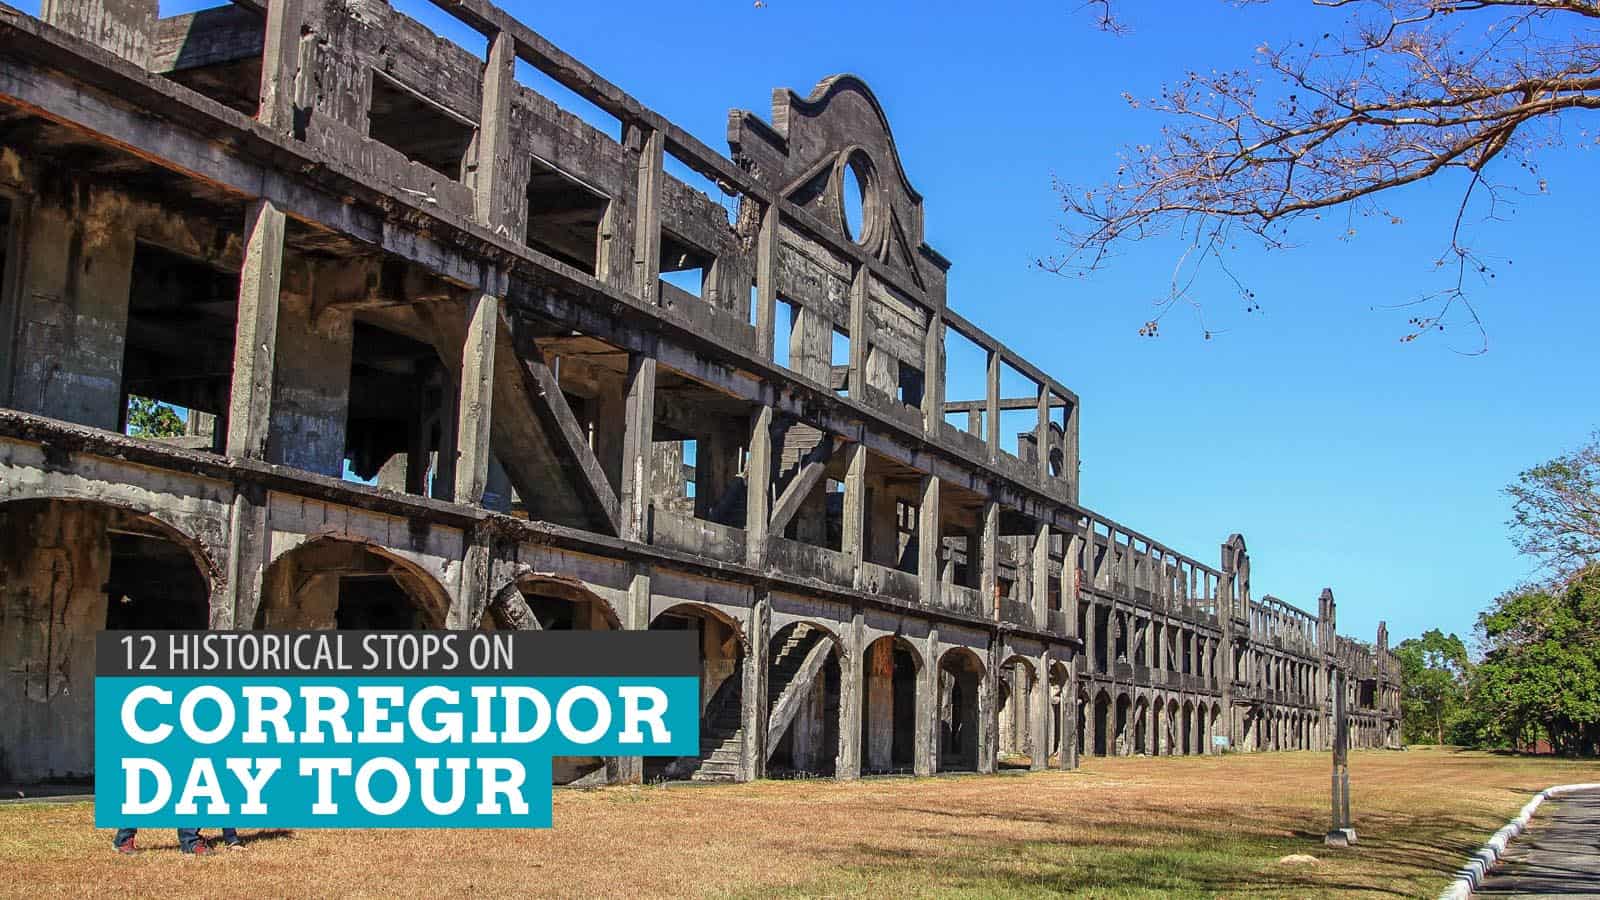 CORREGIDOR DAY TOUR: 12 Historic Sites to Visit